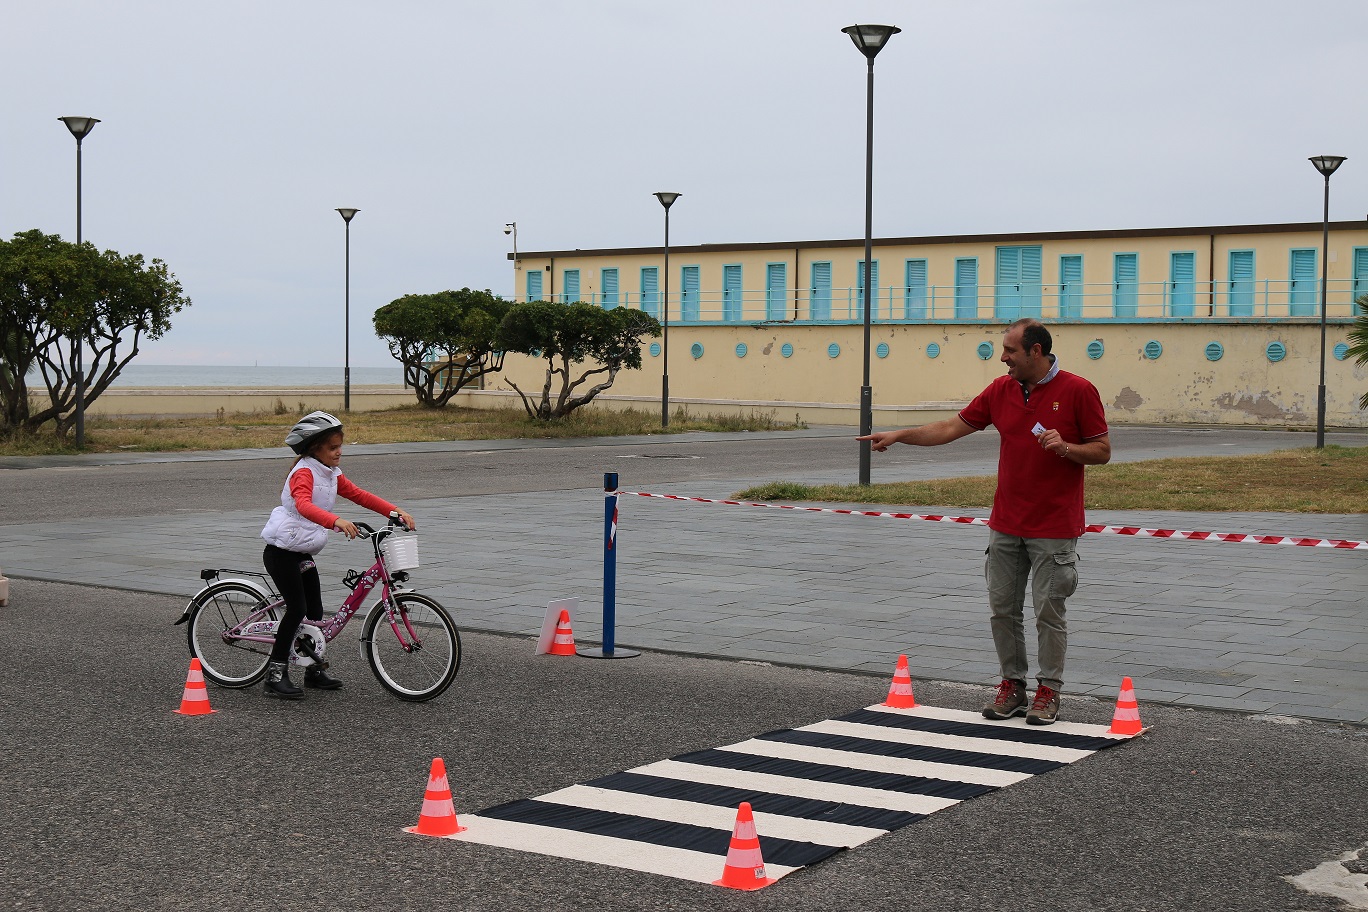 Sicuri in bici, safe-bike arriva a Lido di Camaiore